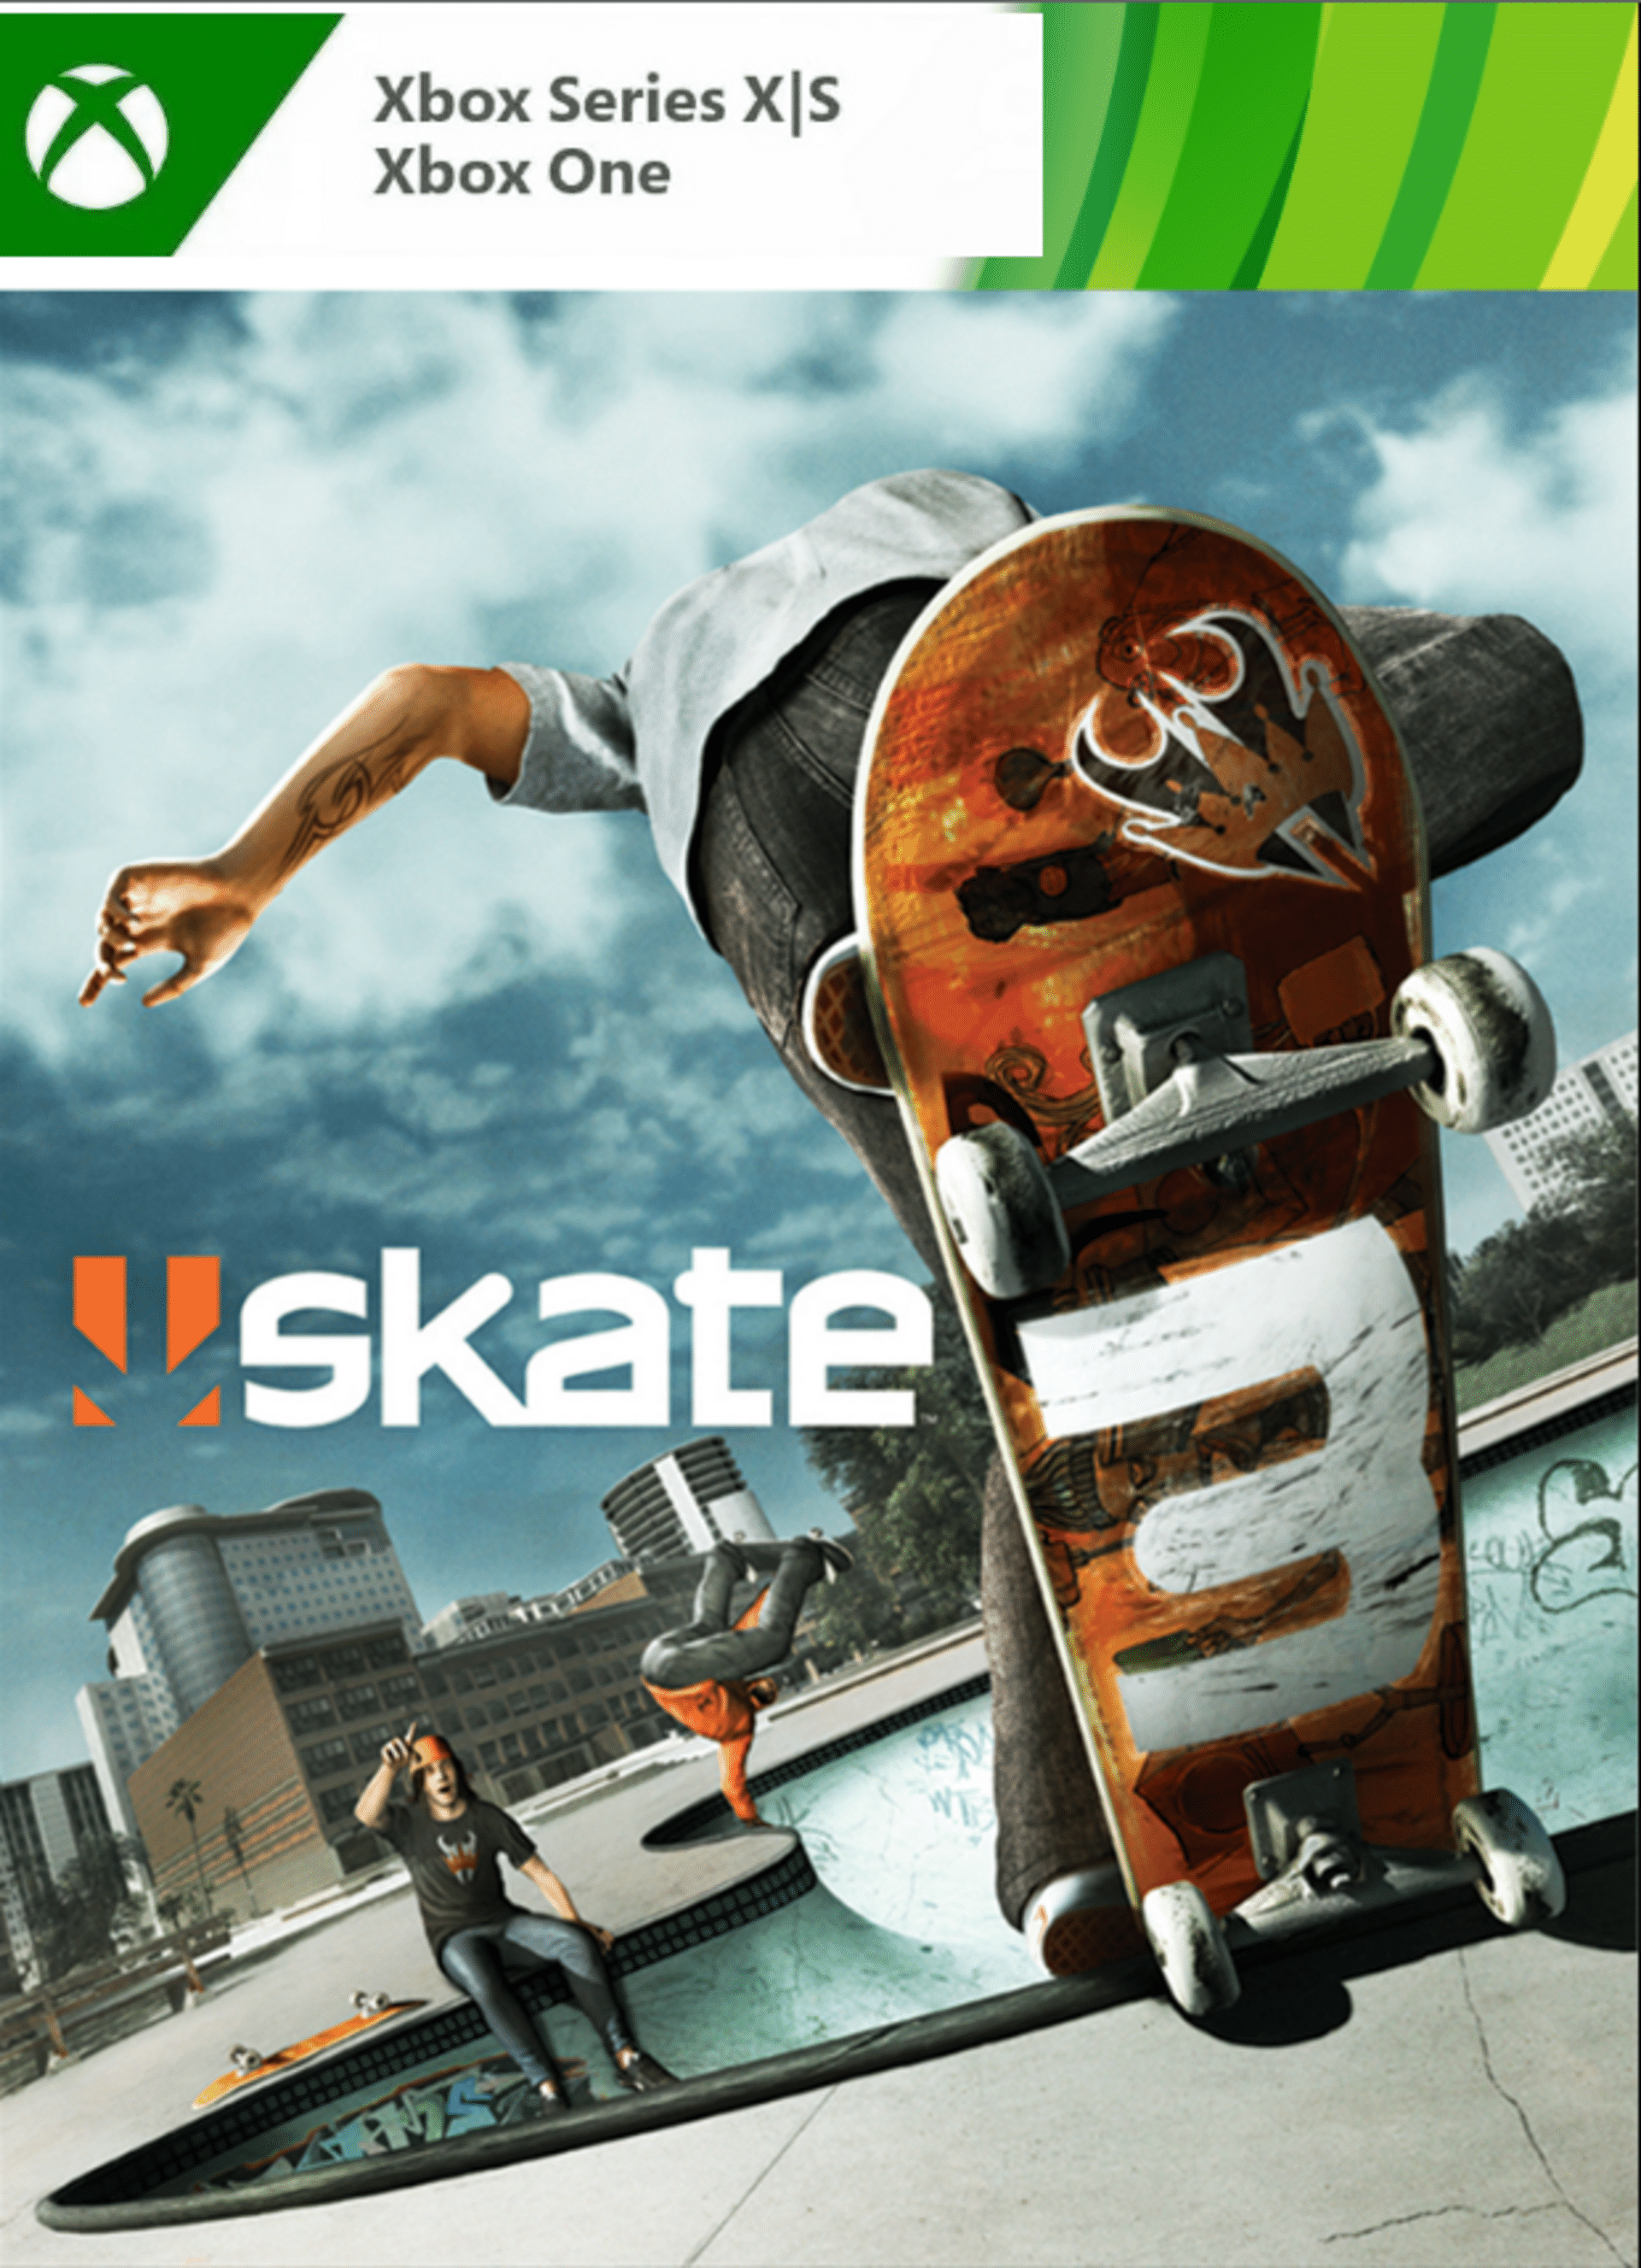 Skate 3 - Xbox Series S: Xenia Performance Analysis 